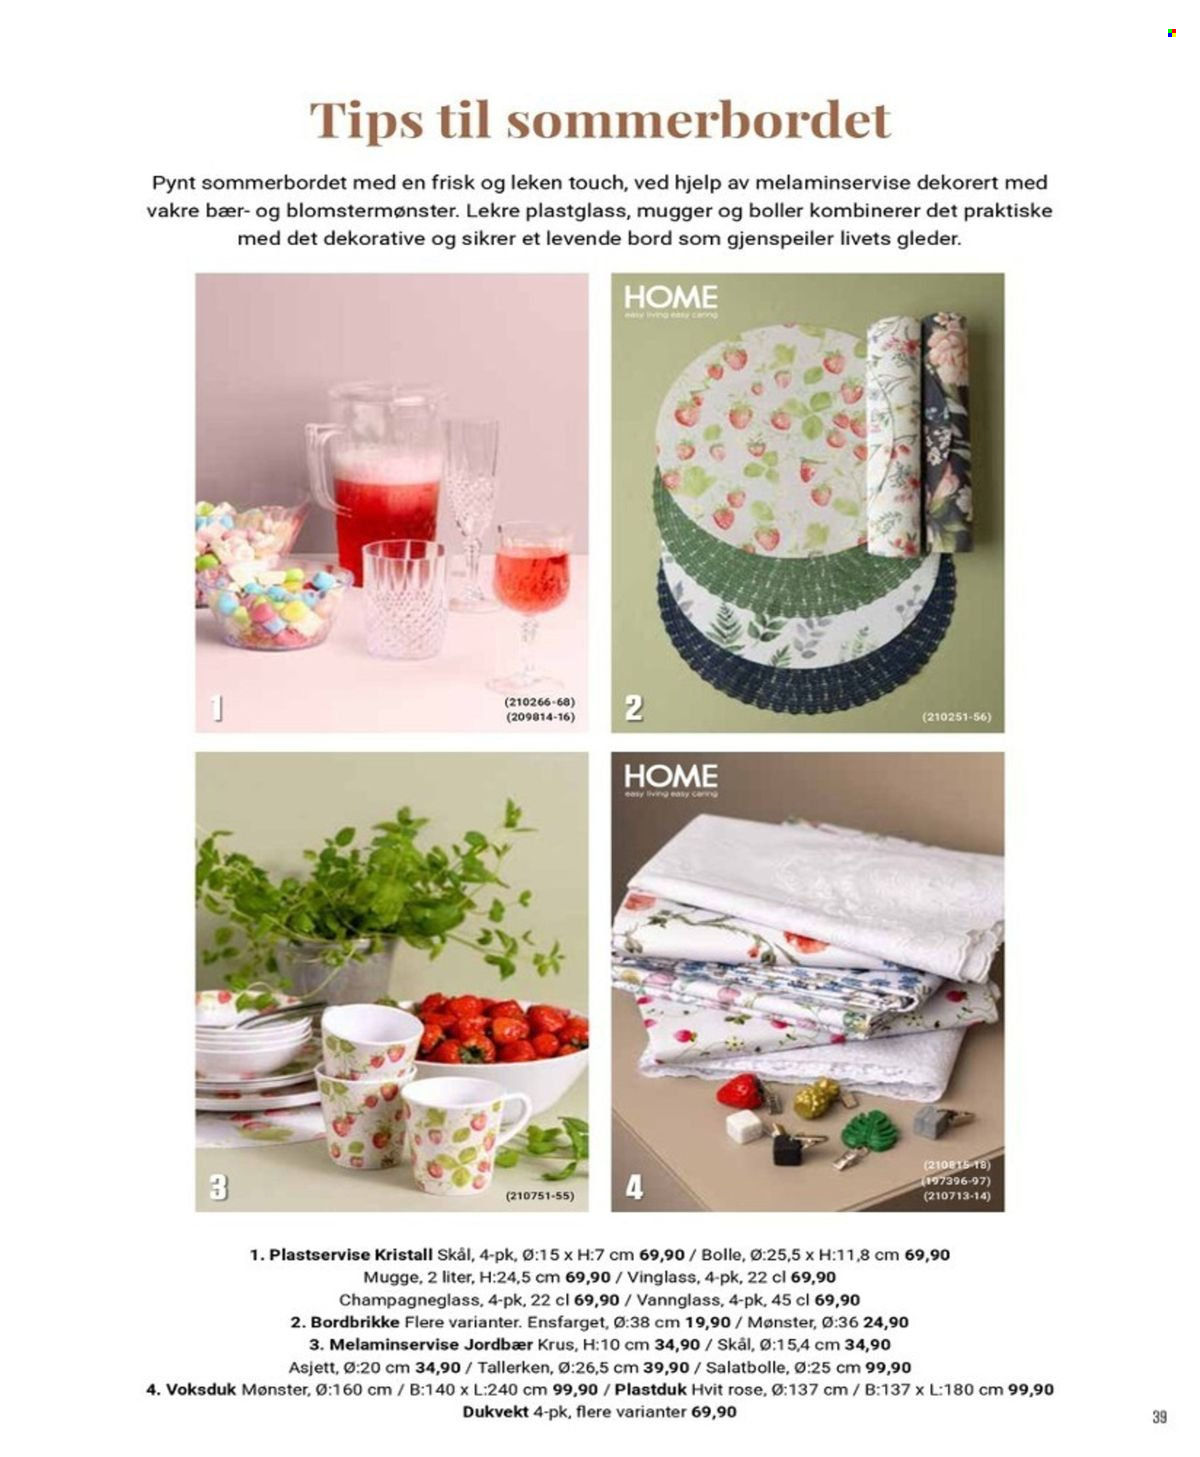 thumbnail - Kundeavis Europris - Produkter fra tilbudsaviser - jordbær, tallerken, skål, kopp, bordduk, bord. Side 32.